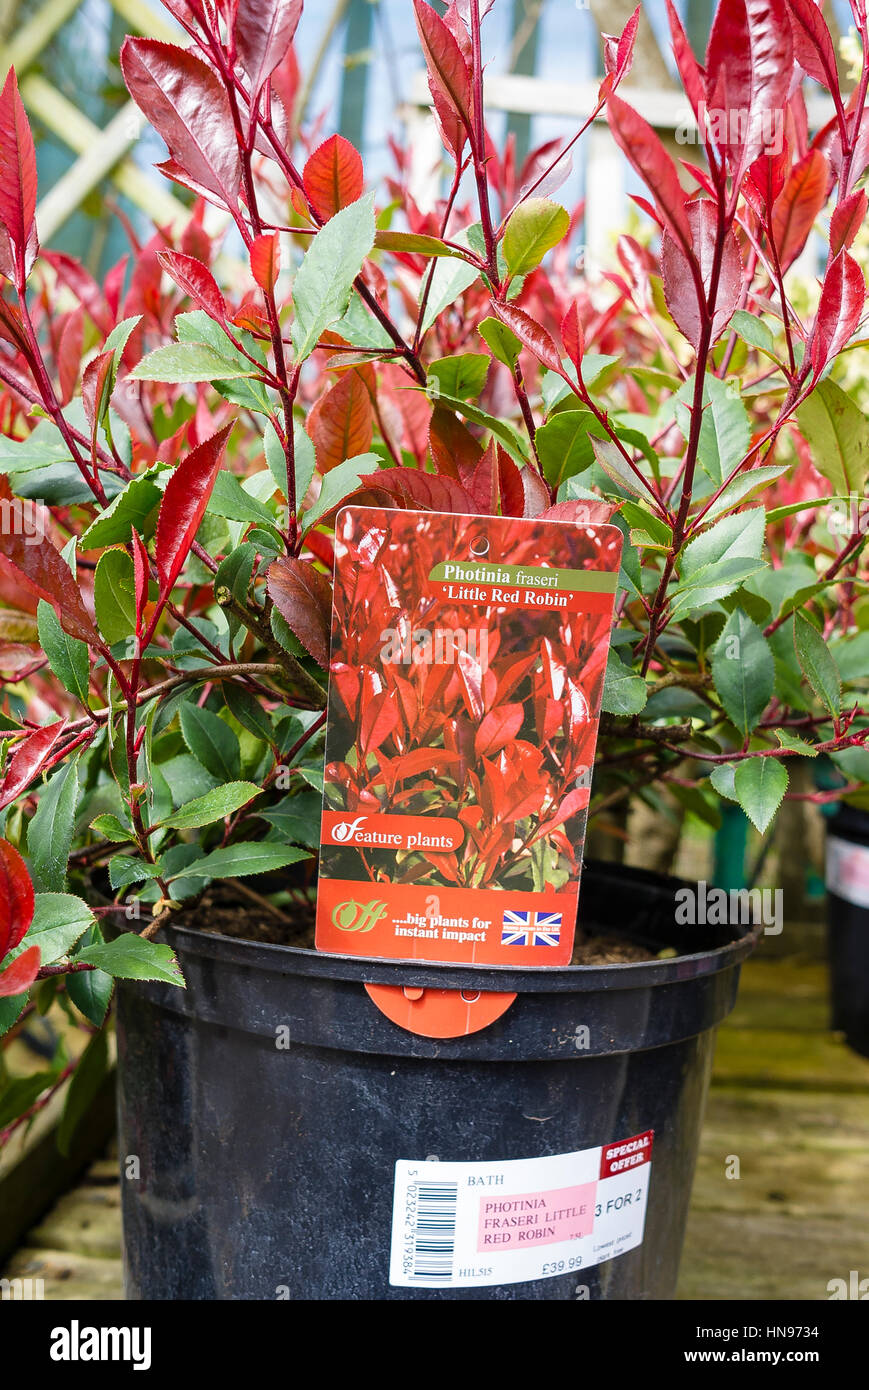 Photinia x fraseri Little Red Robin dans un pot de 7.5L à vendre dans un  centre de jardinage Photo Stock - Alamy